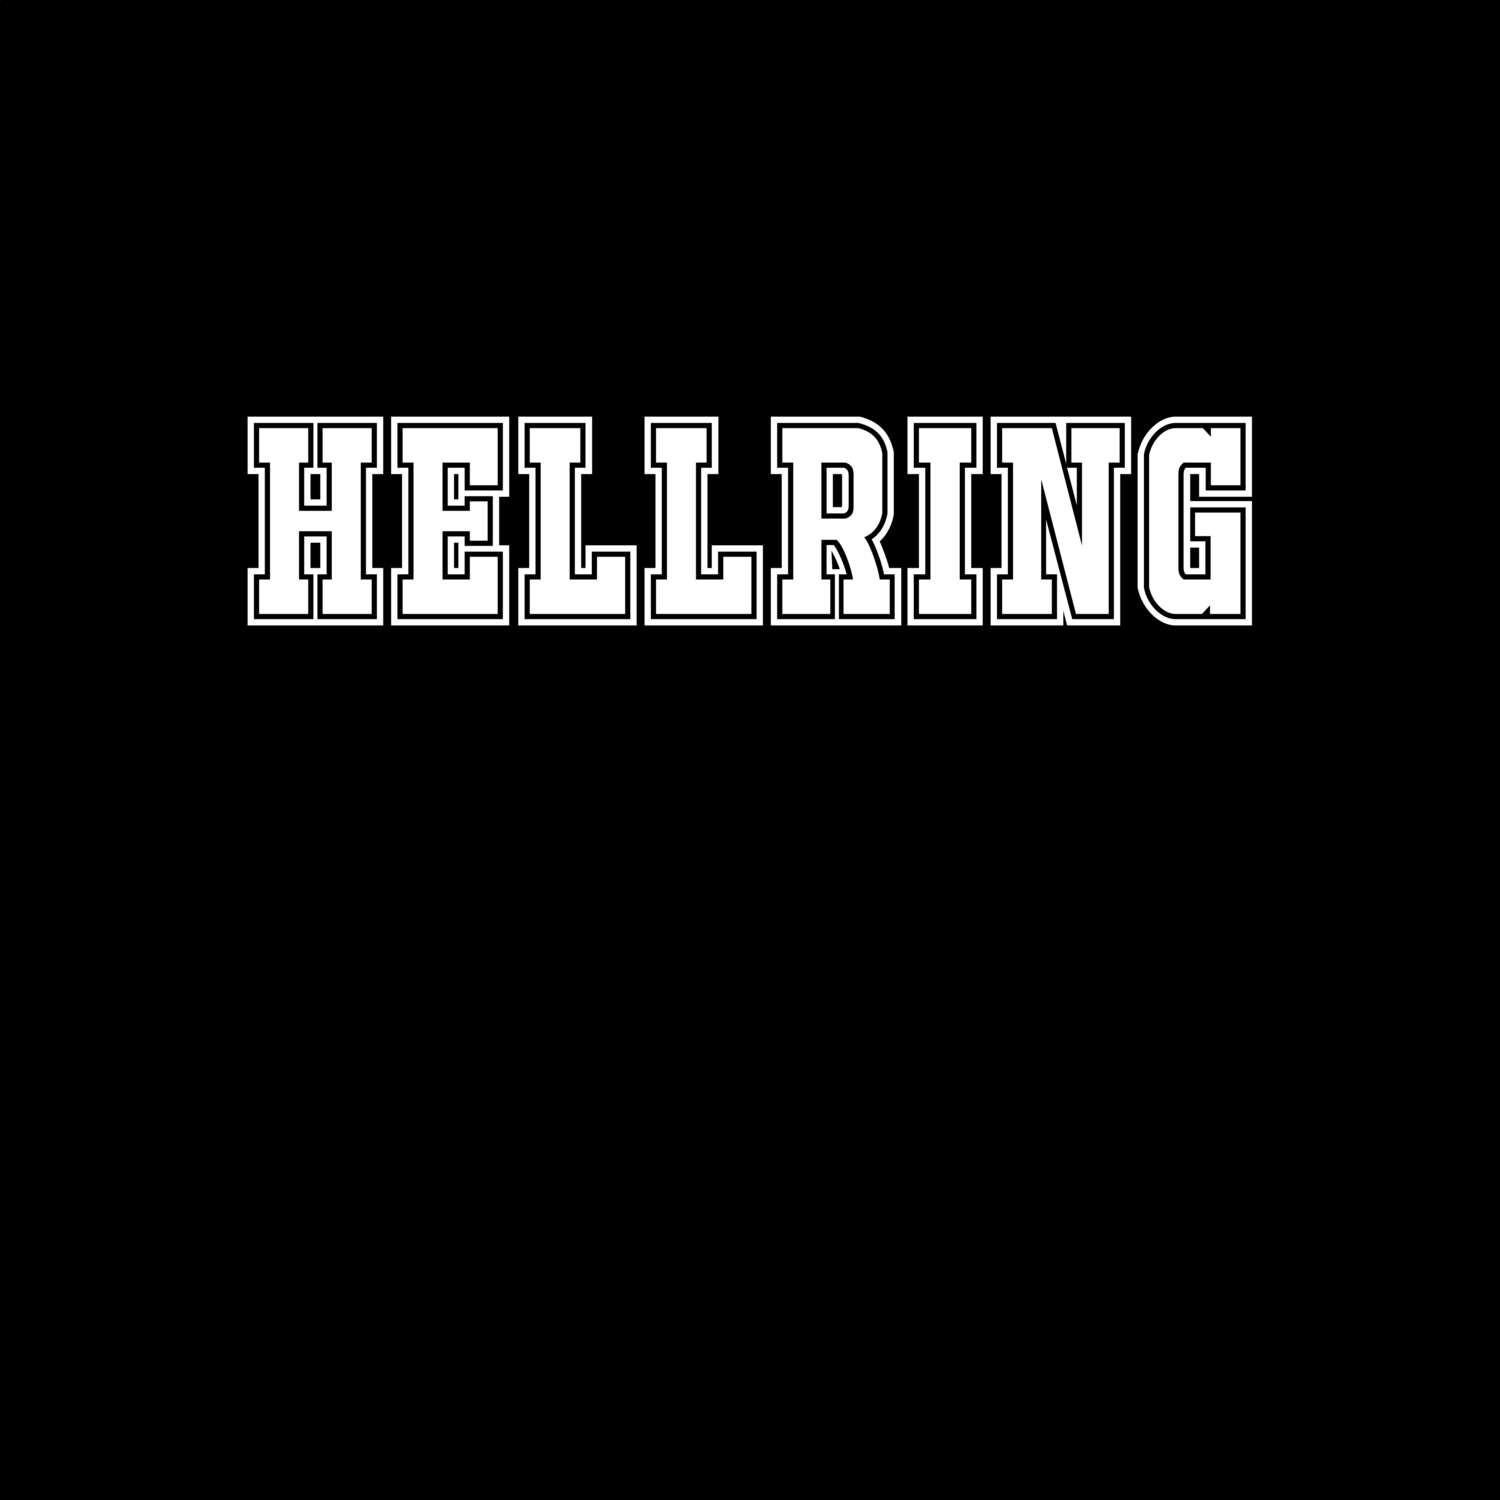 Hellring T-Shirt »Classic«